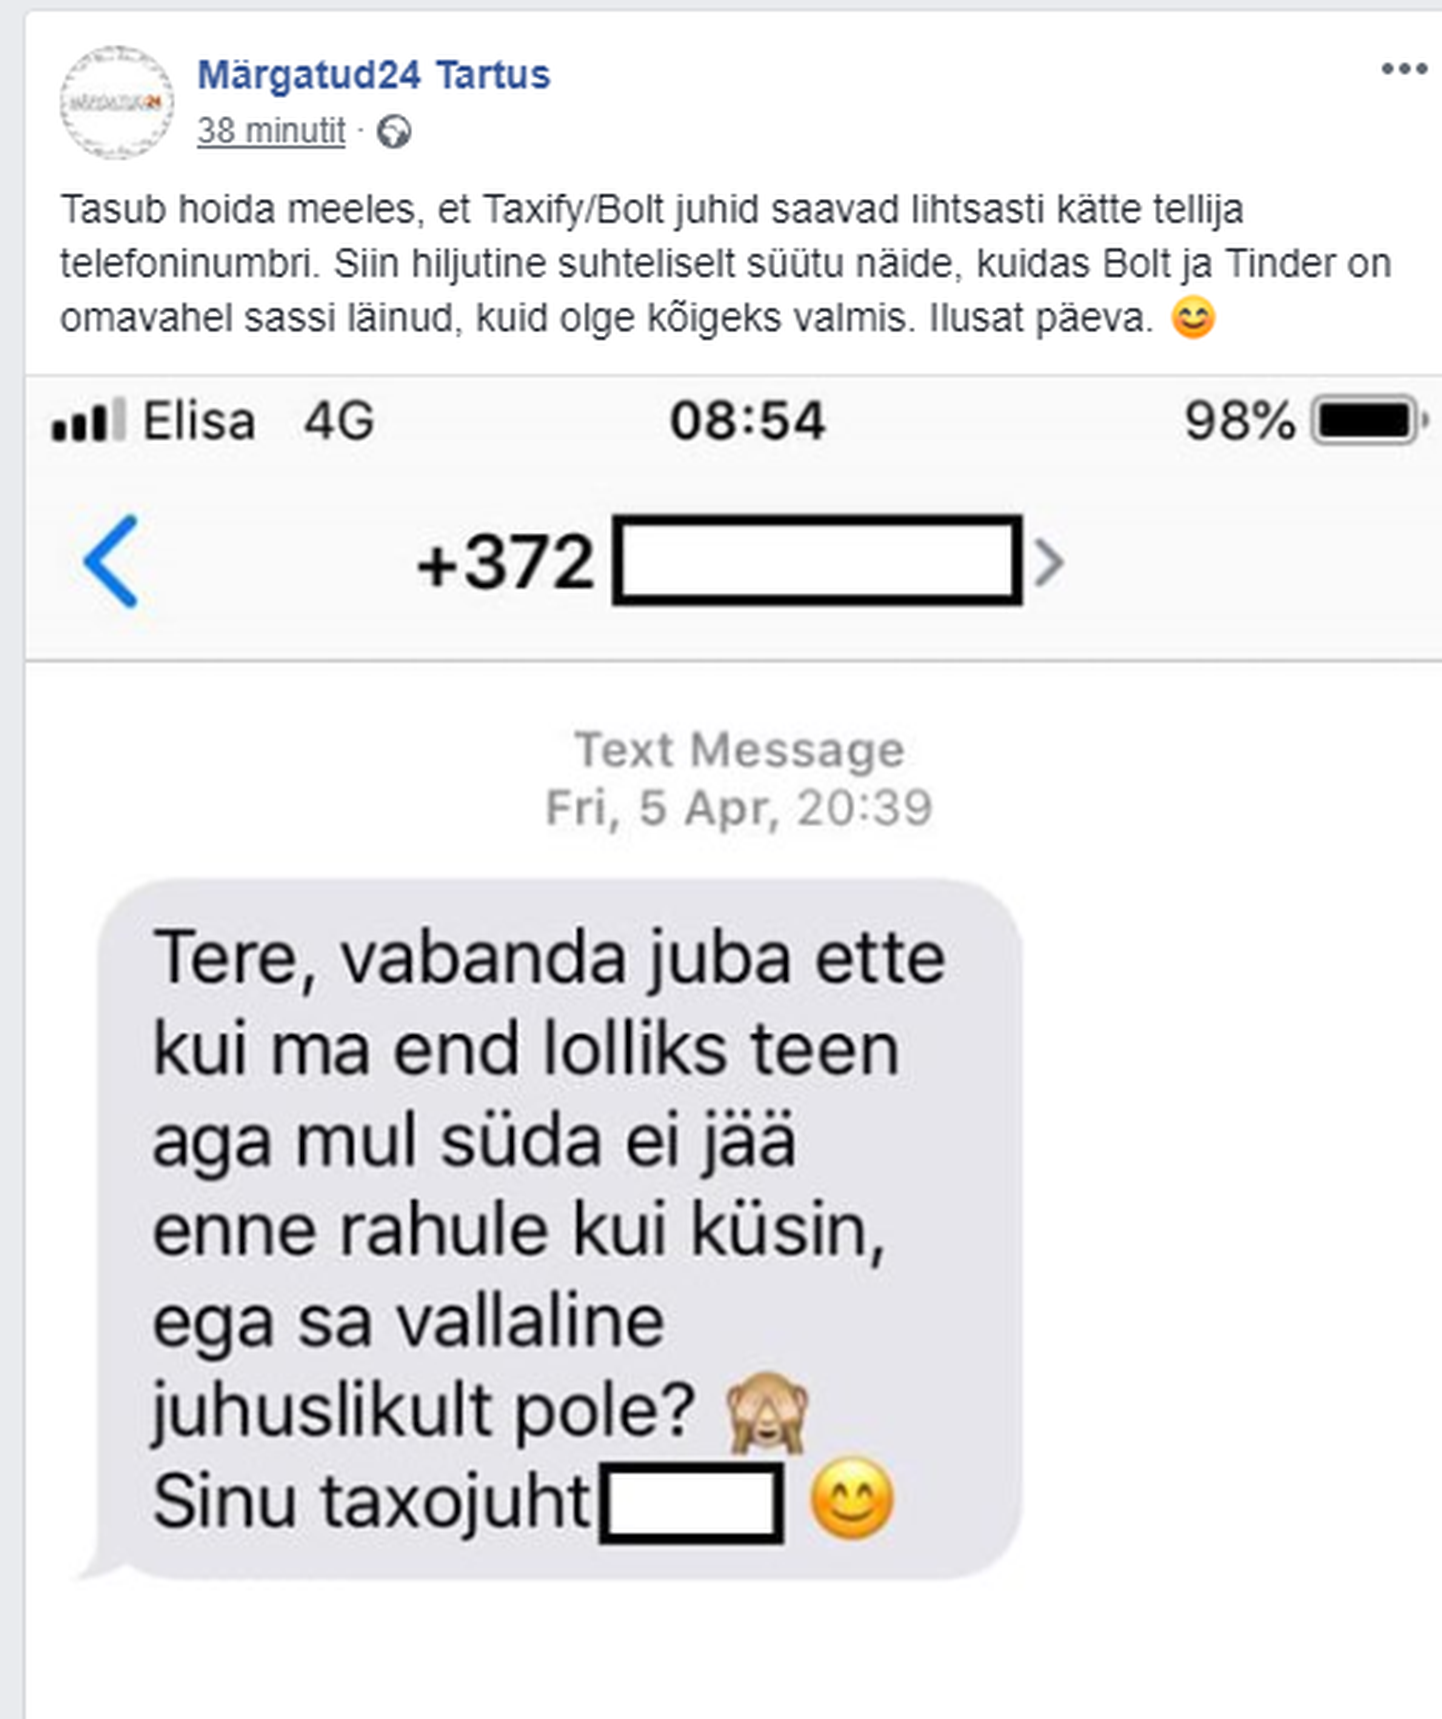 Клиентка Bolt опубликовала в Facebook в группе "Märgatud24 Tartus" скриншот сообщения, в котором таксист интересуется ее семейным положением.